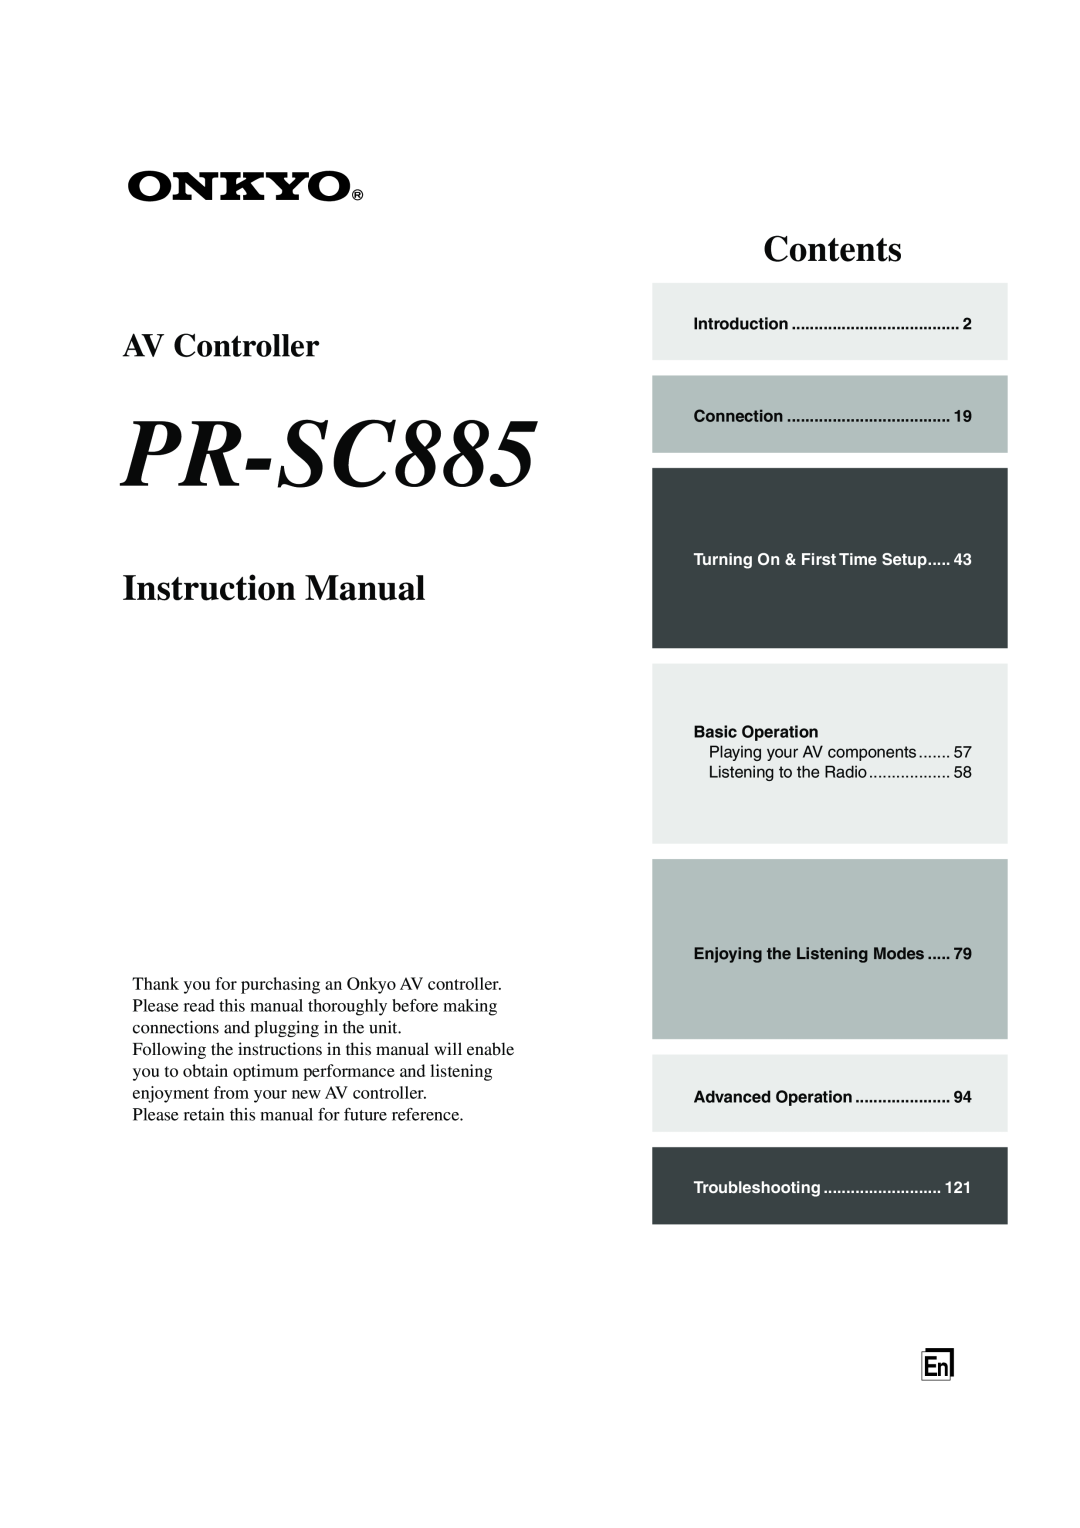 Onkyo PR-SC885 instruction manual Instruction Manual, Contents, AV Controller 